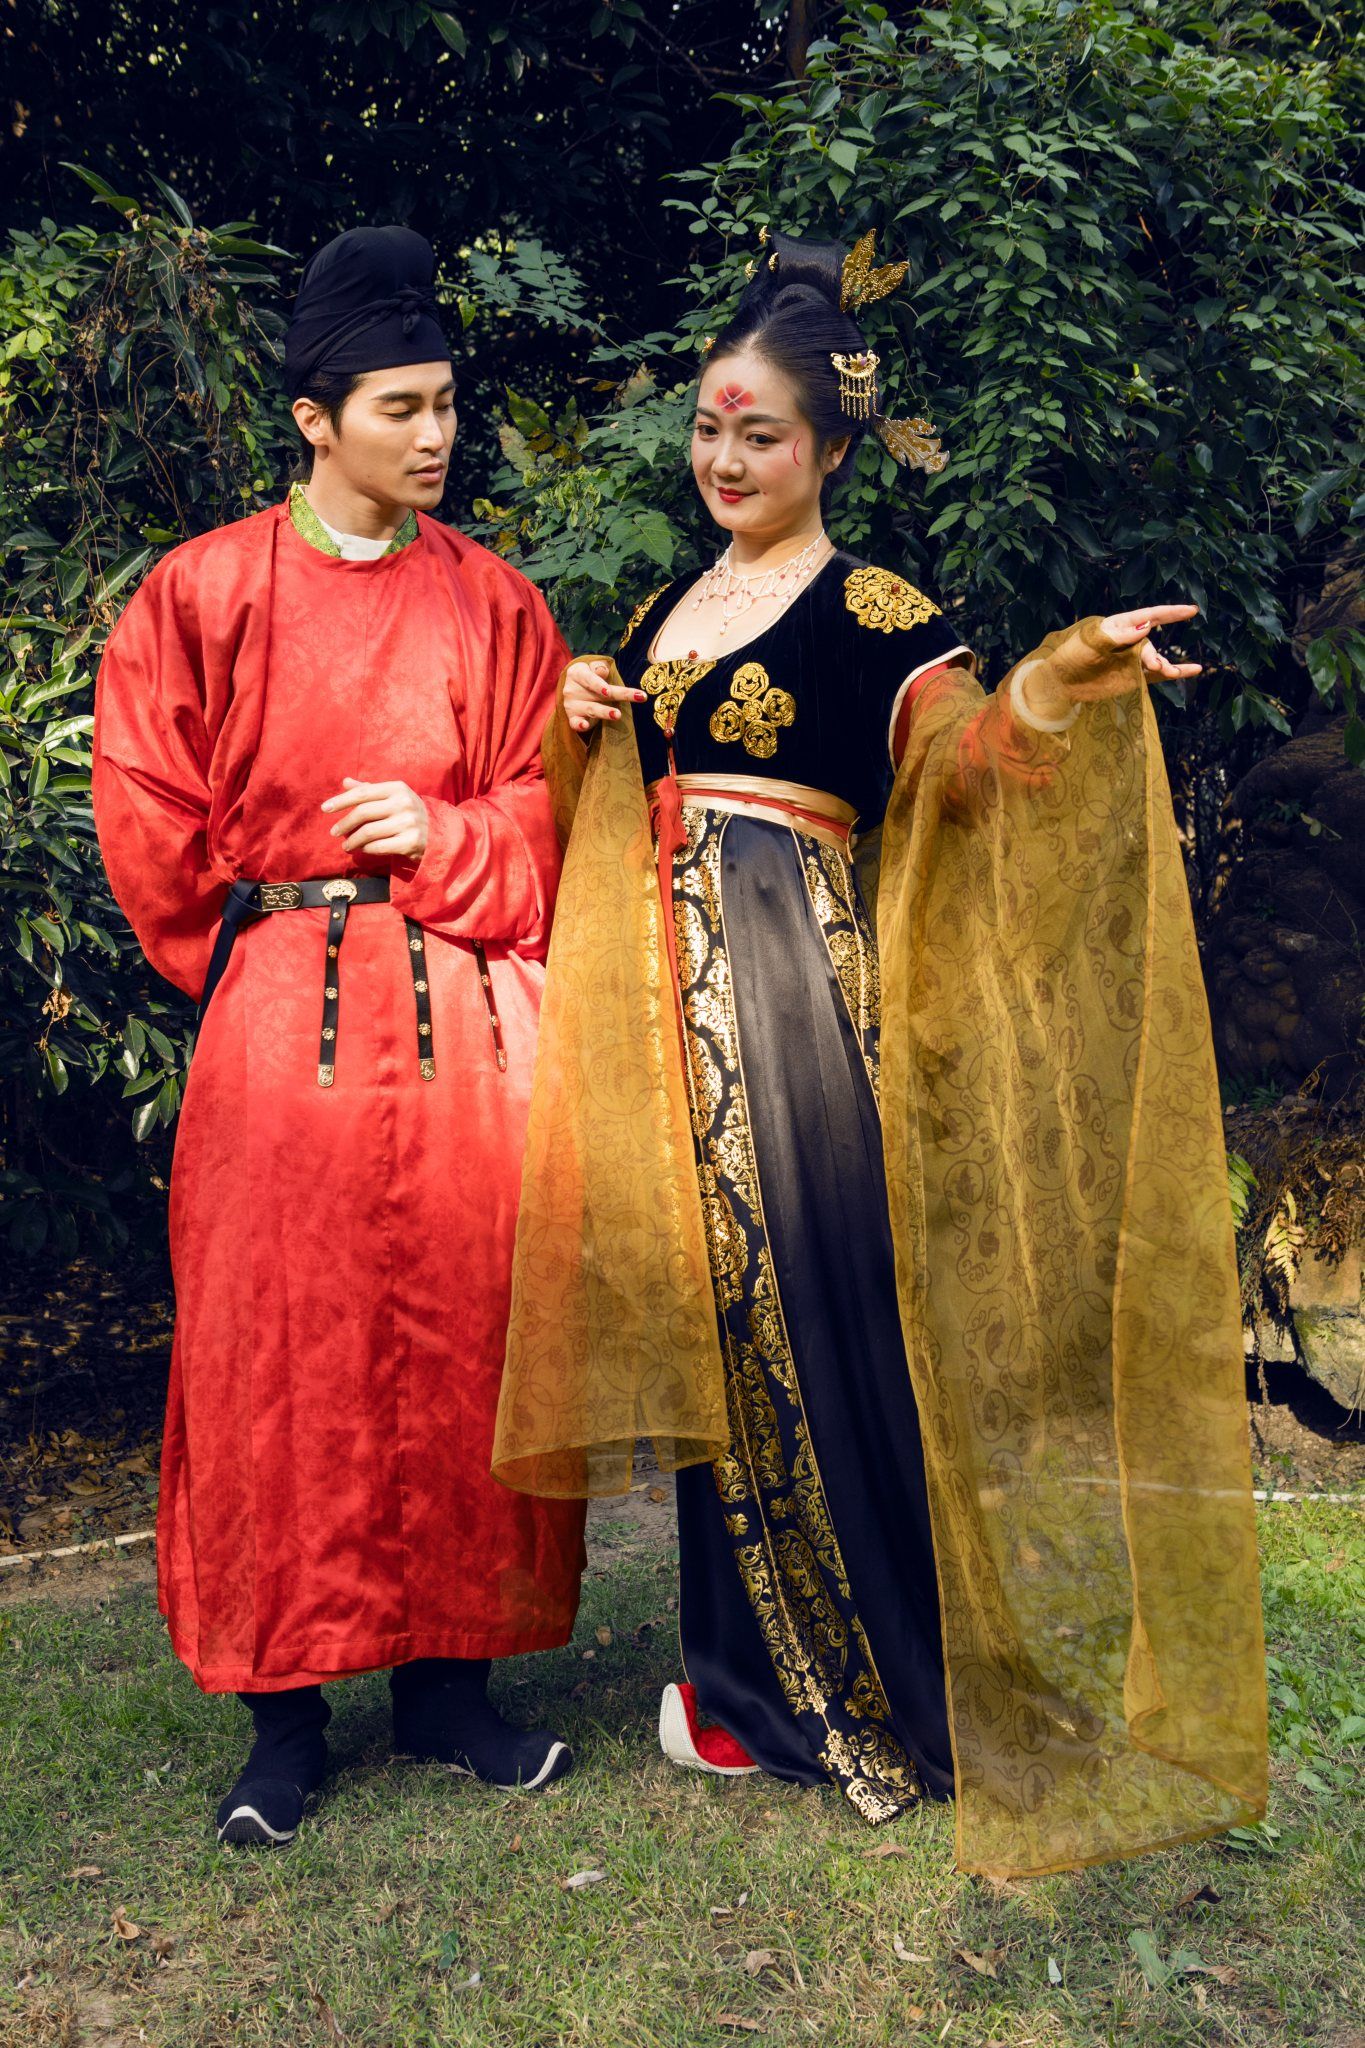 スナップ 中国で若者を中心に人気集める 漢服 漢民族の伝統衣装の魅力をアピール Wwdjapan